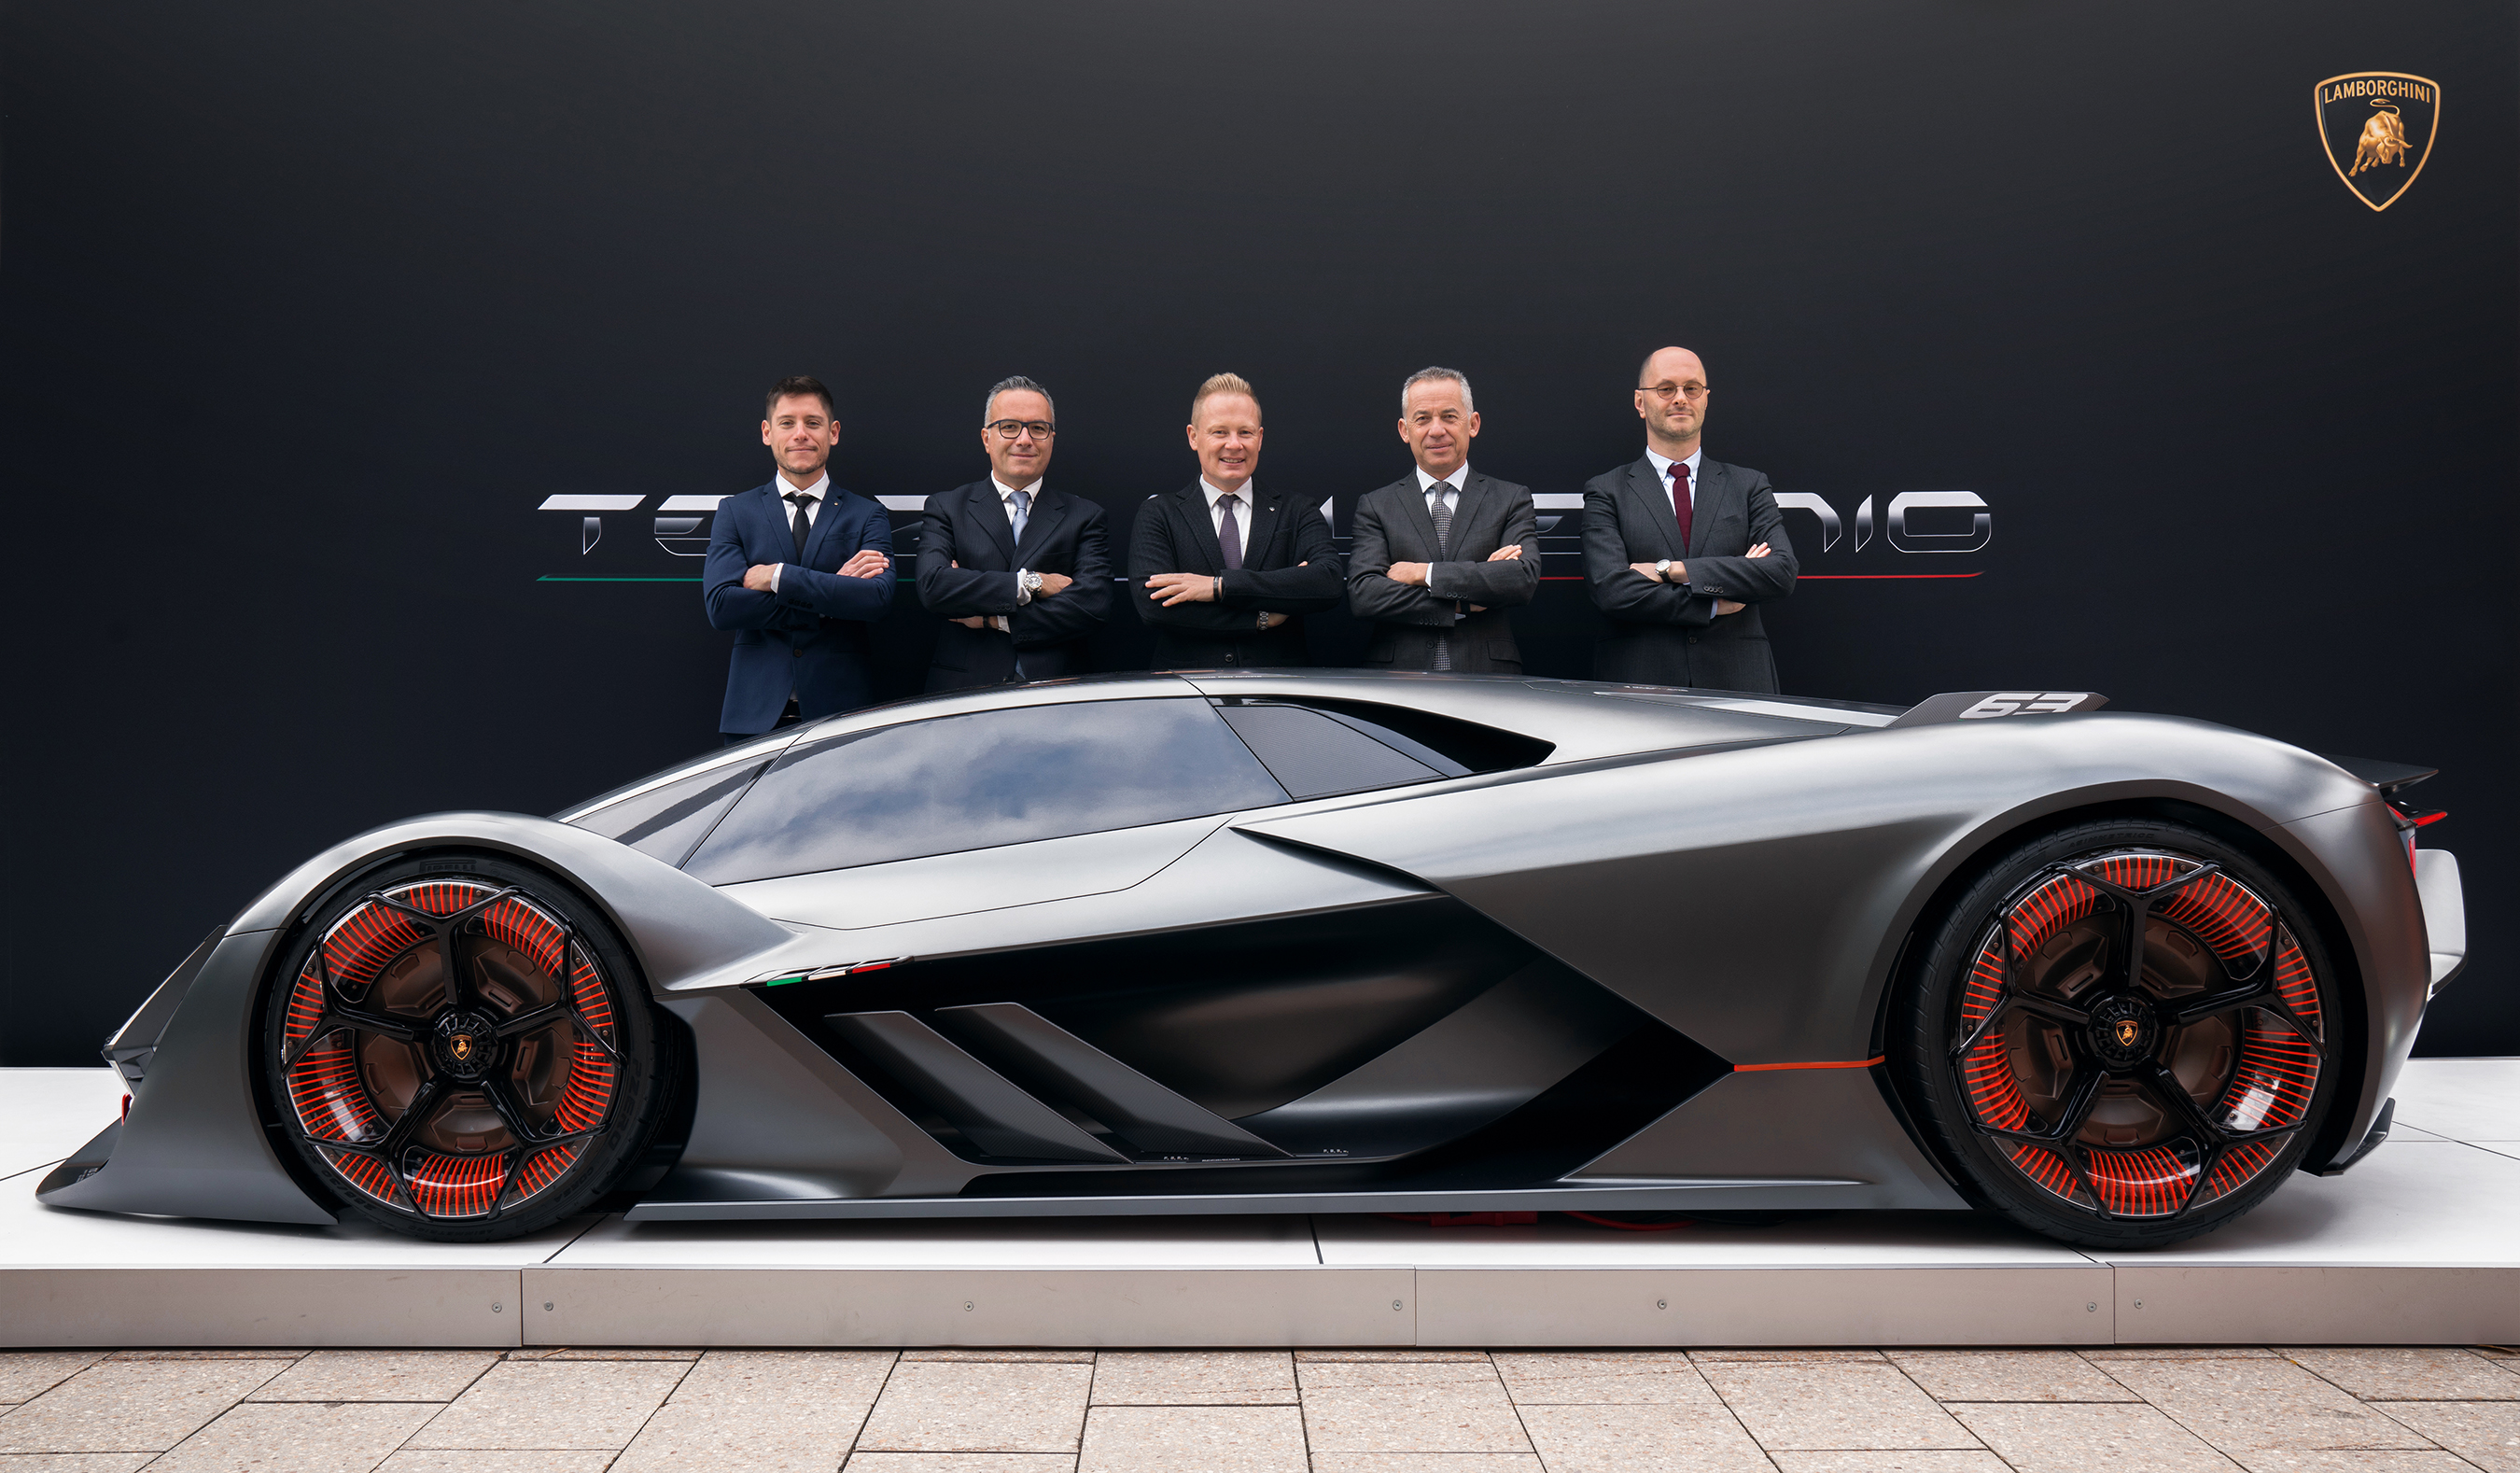 Lamborghini Terzo Millennio: A Future Vision and Dream Based on the Collaboration with MIT